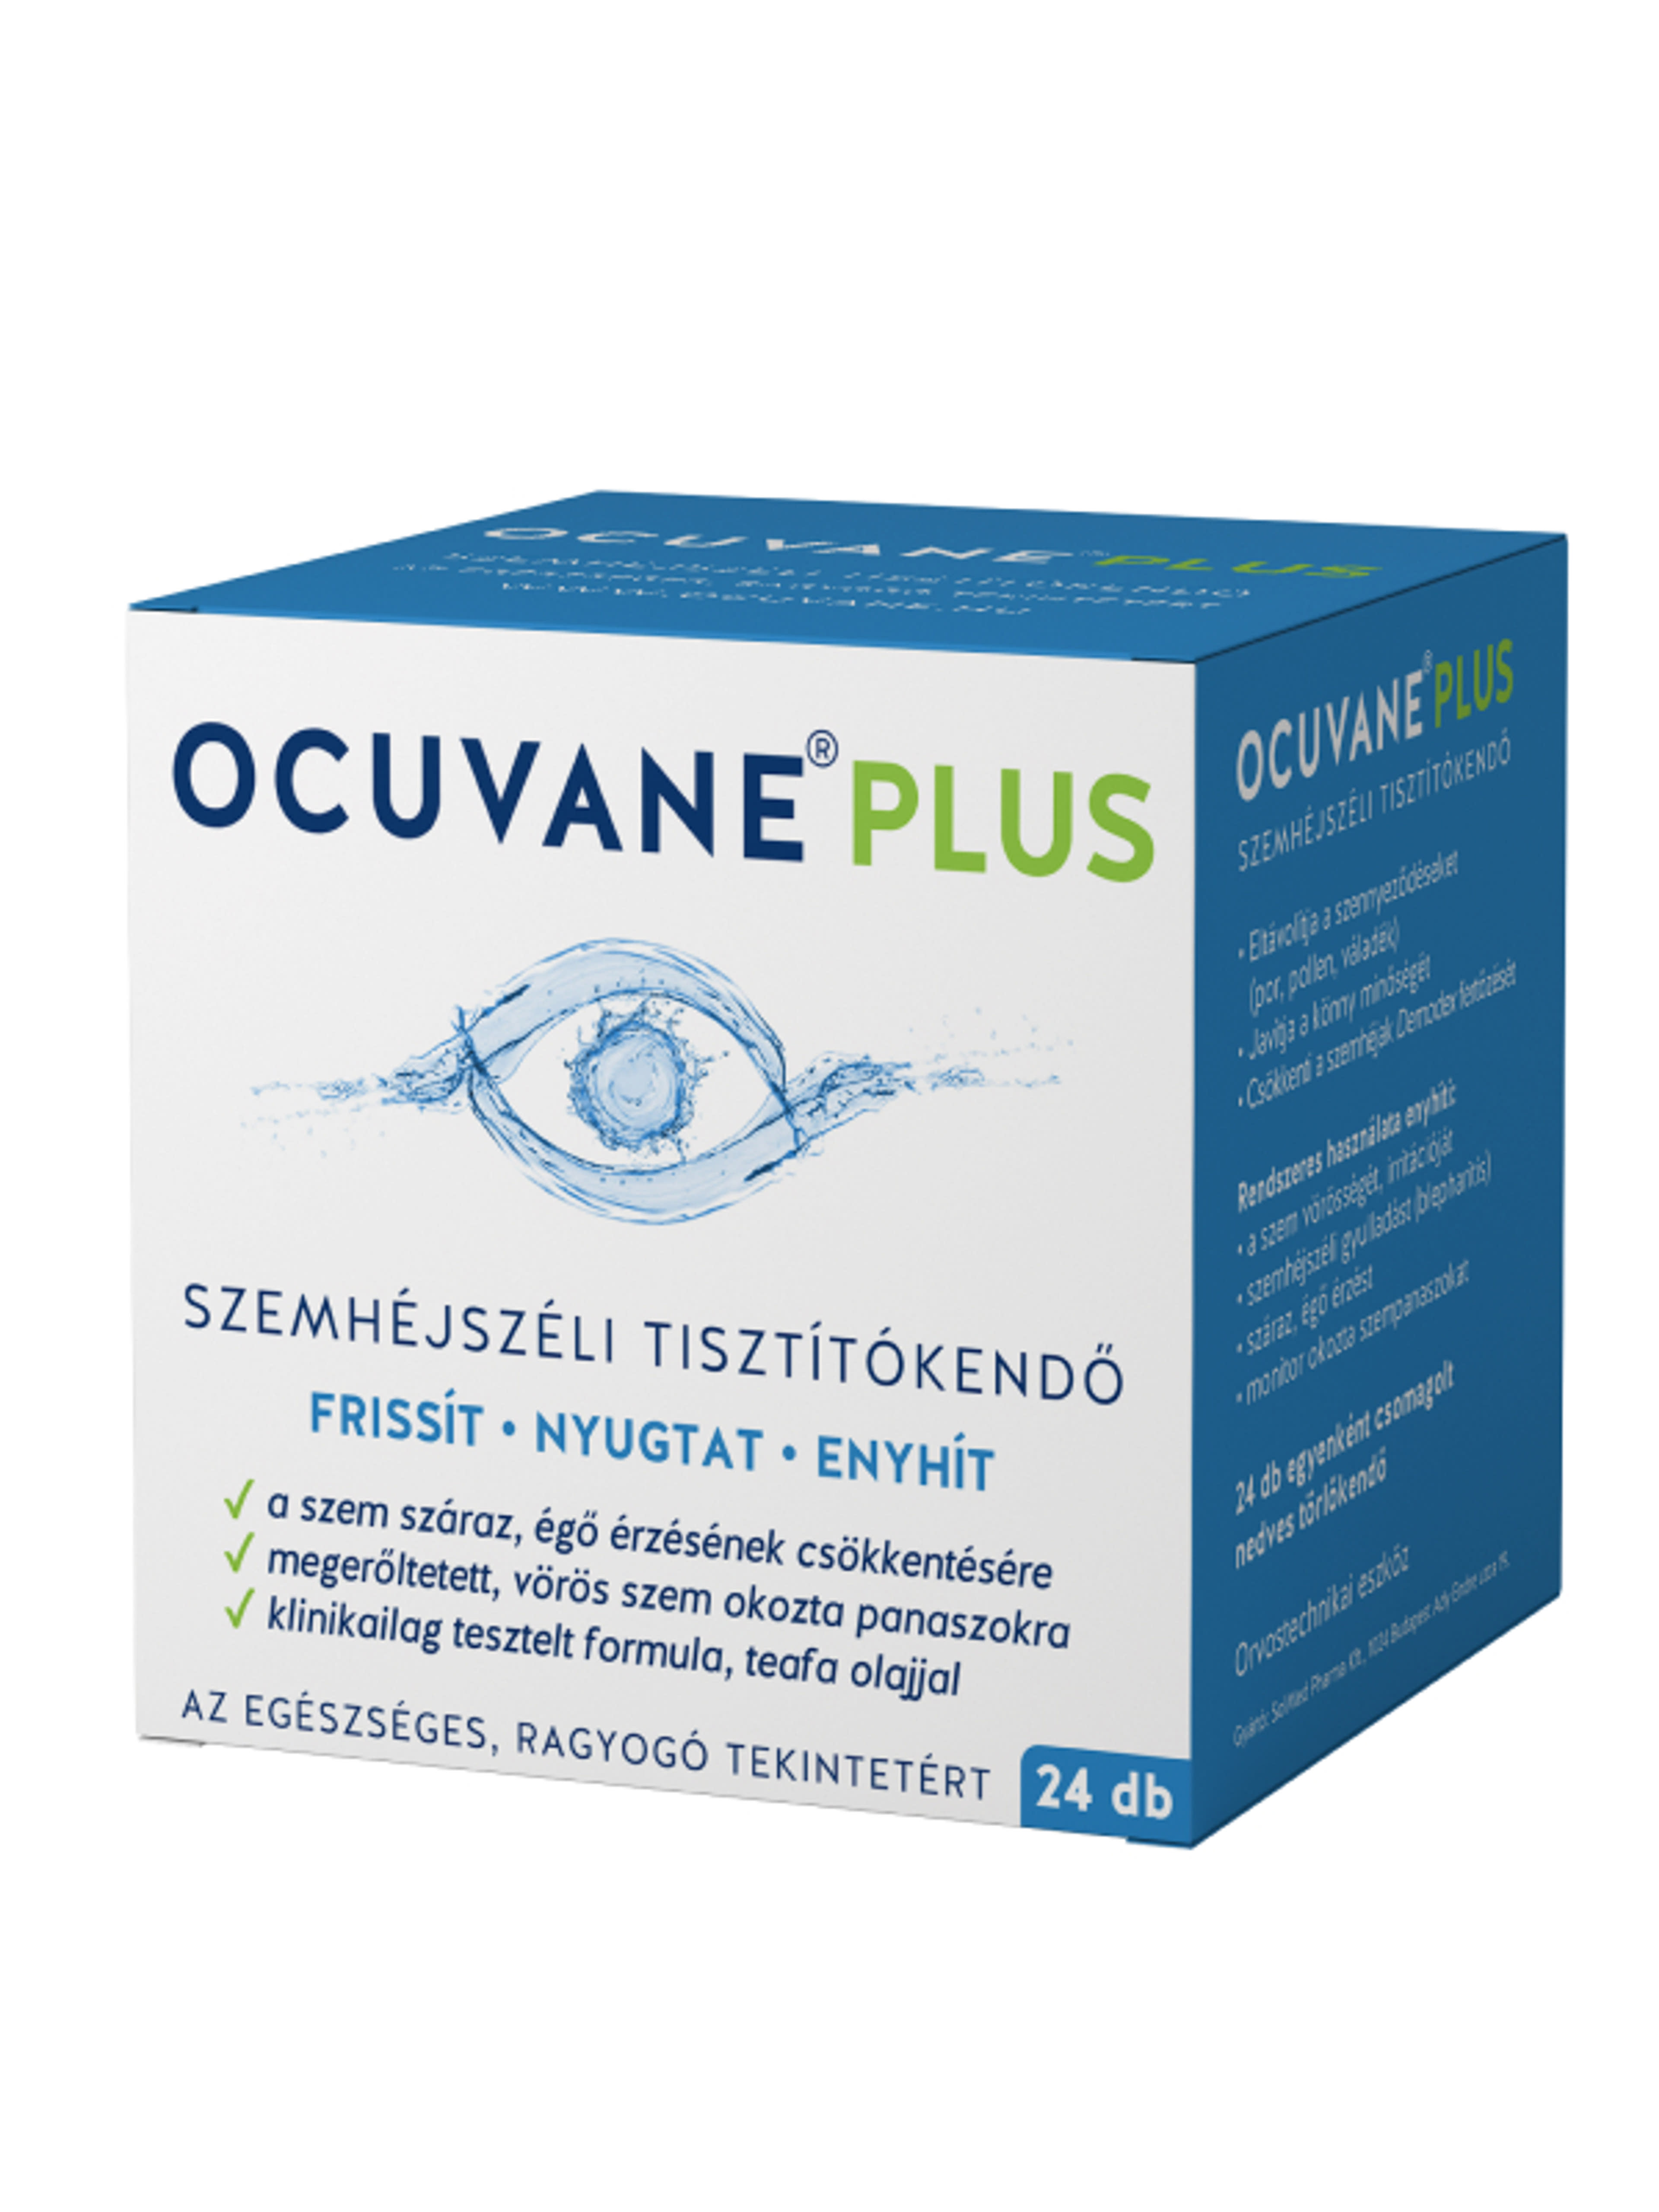 Ocuvane plus szemhéjszéli tisztítókendő - 24 db